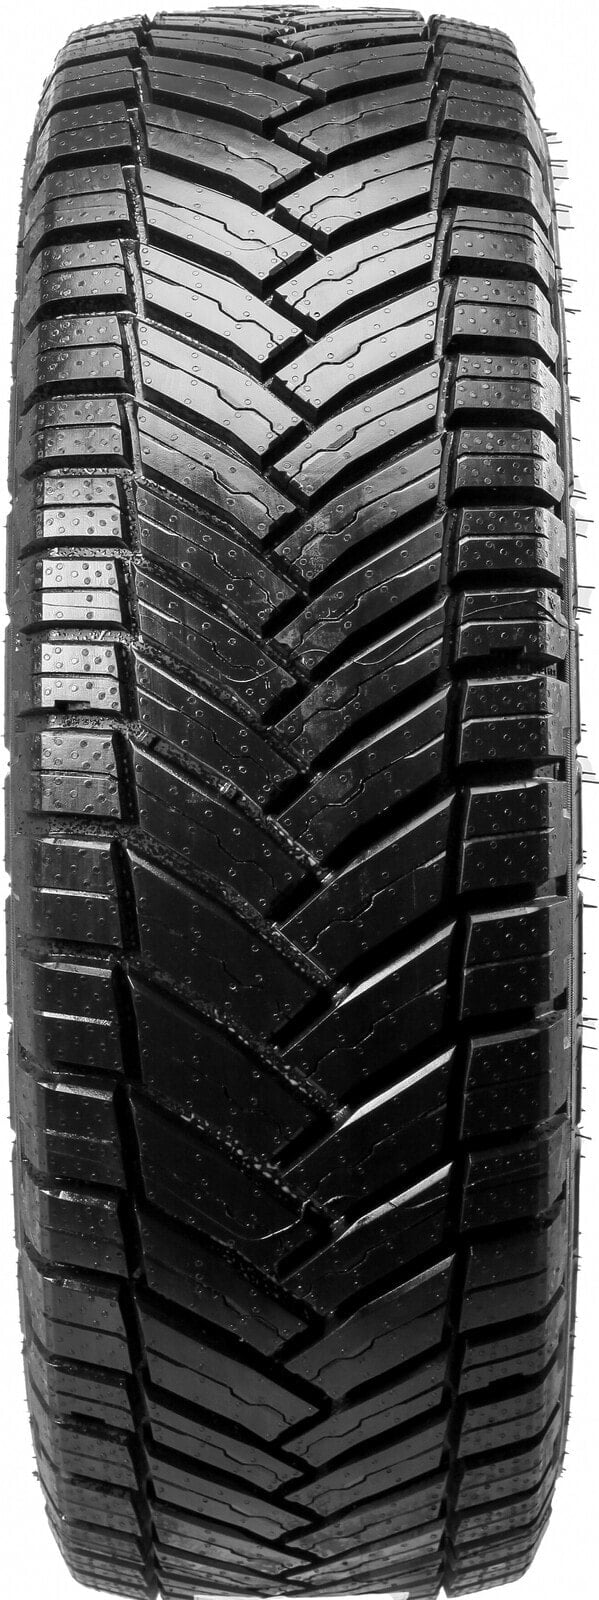 Шины для легких грузовых автомобилей всесезонные Michelin Agilis Crossclimate 3PMSF M+S DEMO 215/75 R16 116R